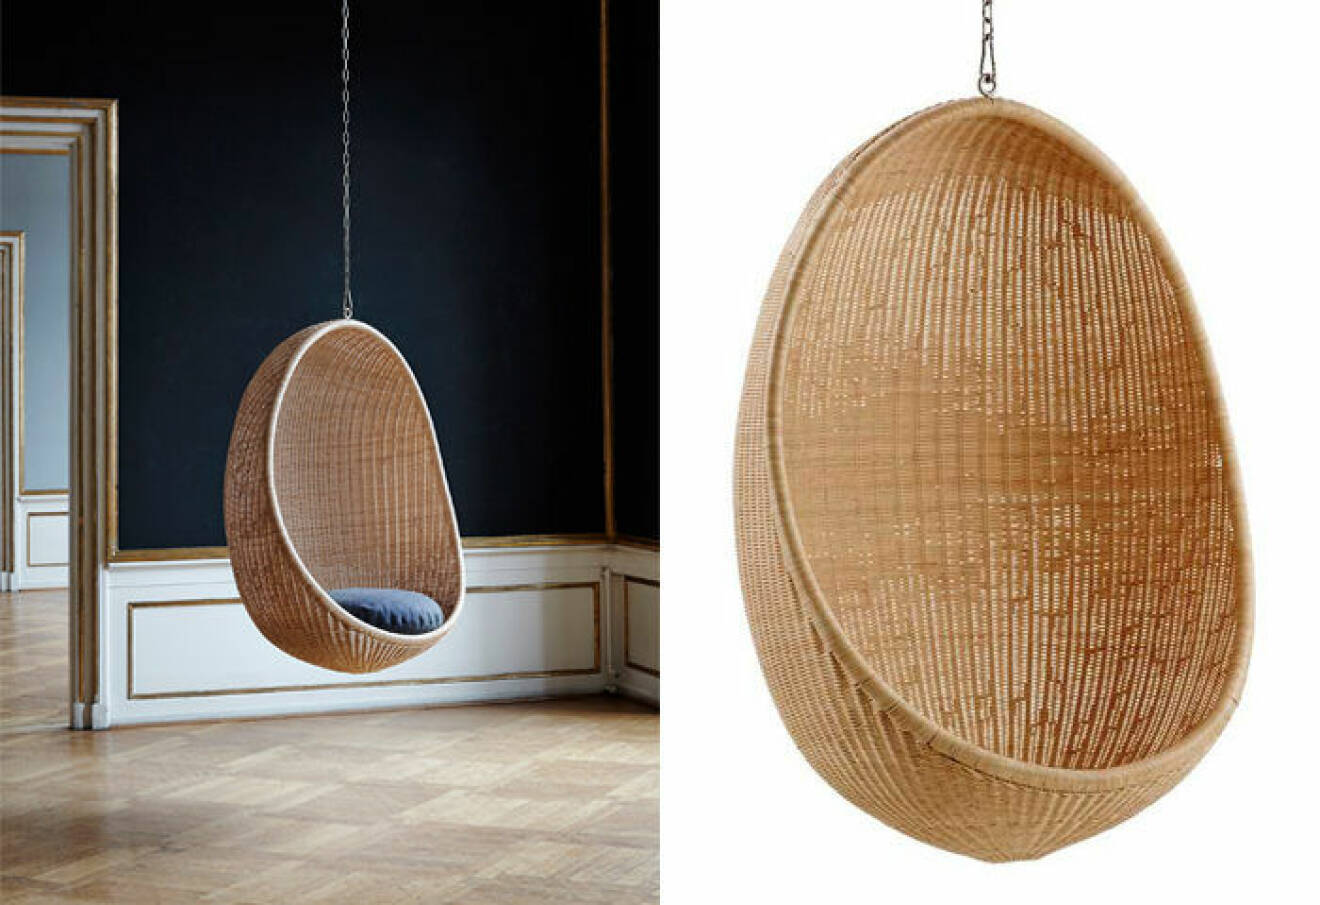 Hanging Egg chair är en designklassiker i naturlig rotting som formgavs av Nanna och Jørgen Ditzel redan år 1959. 